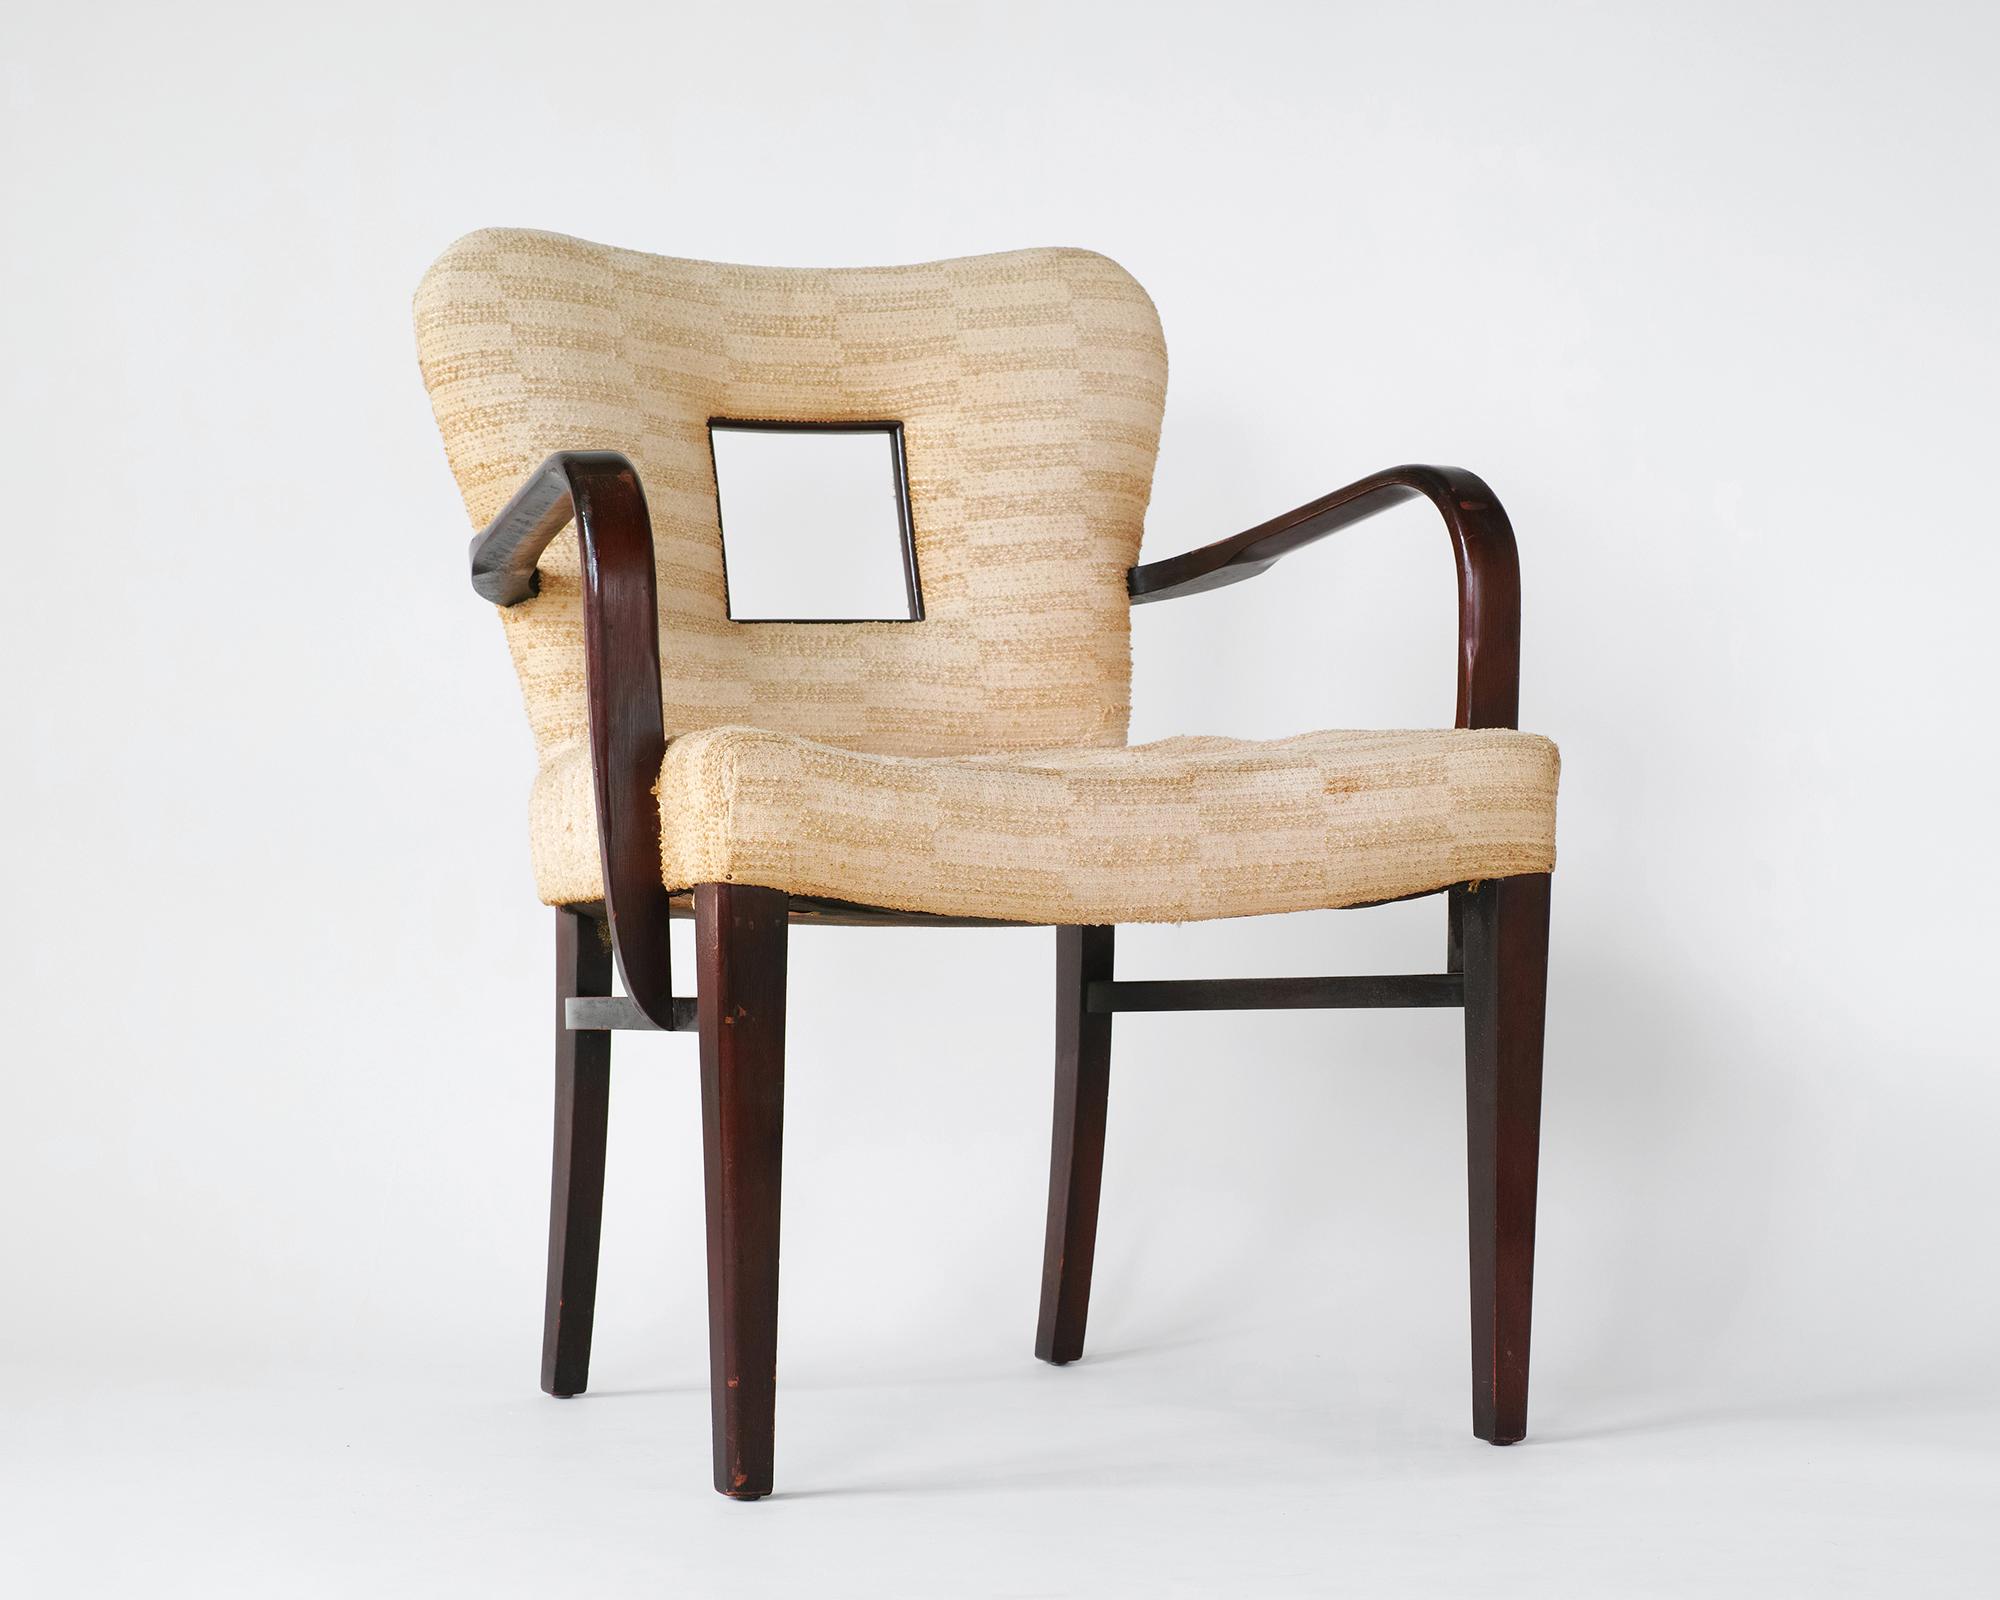 Pour votre considération est ce rare modèle 2254 ½ fauteuil conçu par Paul Frankl dans tous les originaux, non restauré condition. Il présente un cadre sculptural en bois massif aux courbes délicates et une découpe de fenêtre distinctive dans le